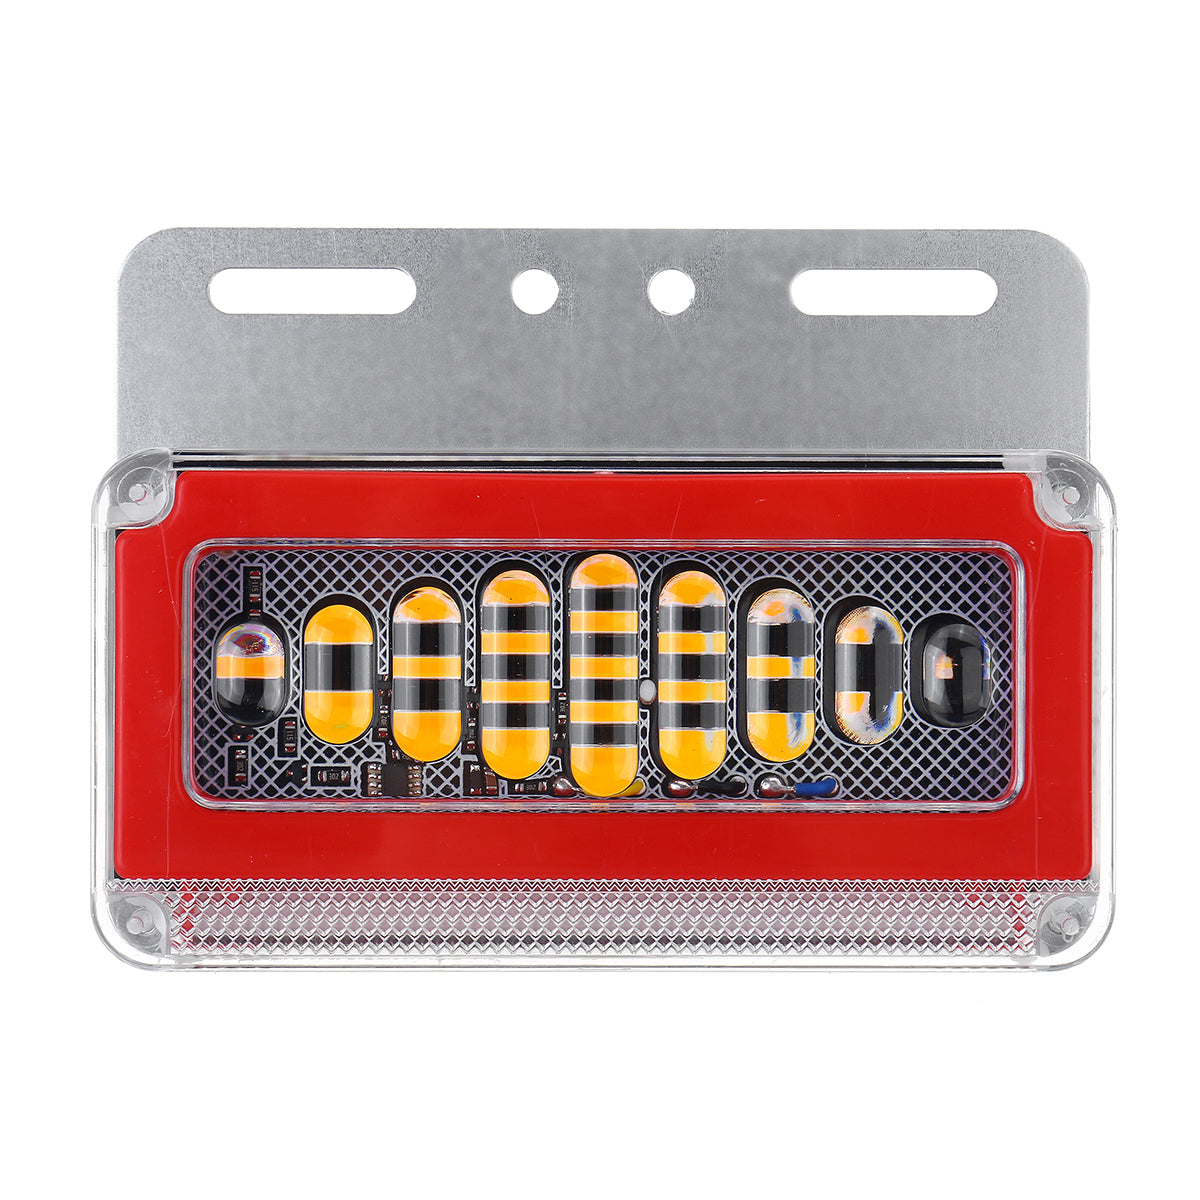 Firebrick 4pcs 24V Flowing LED Side Marker Signal Light Indicator For Truck Trailers